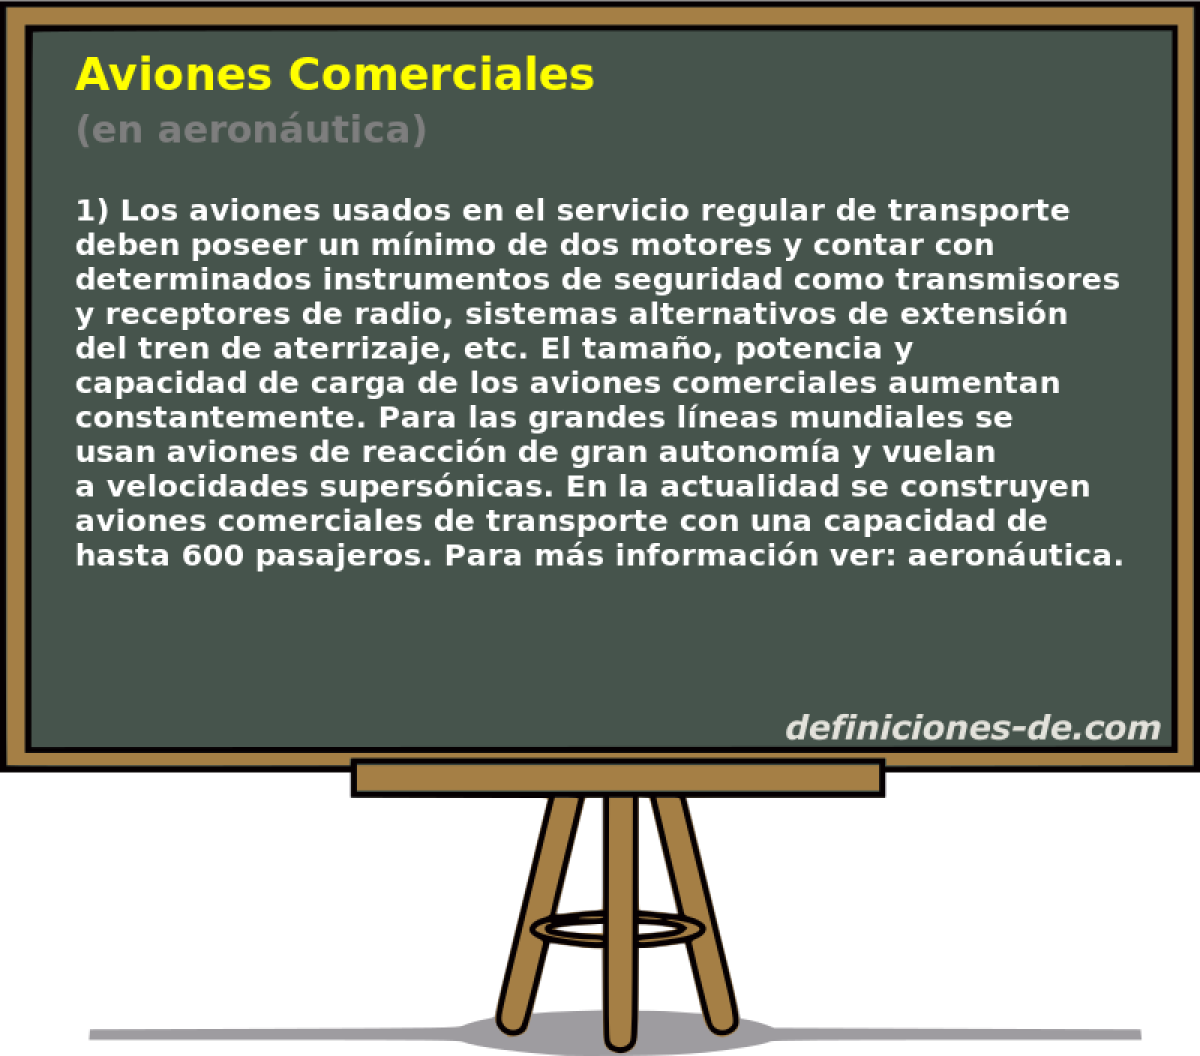 Aviones Comerciales (en aeronutica)